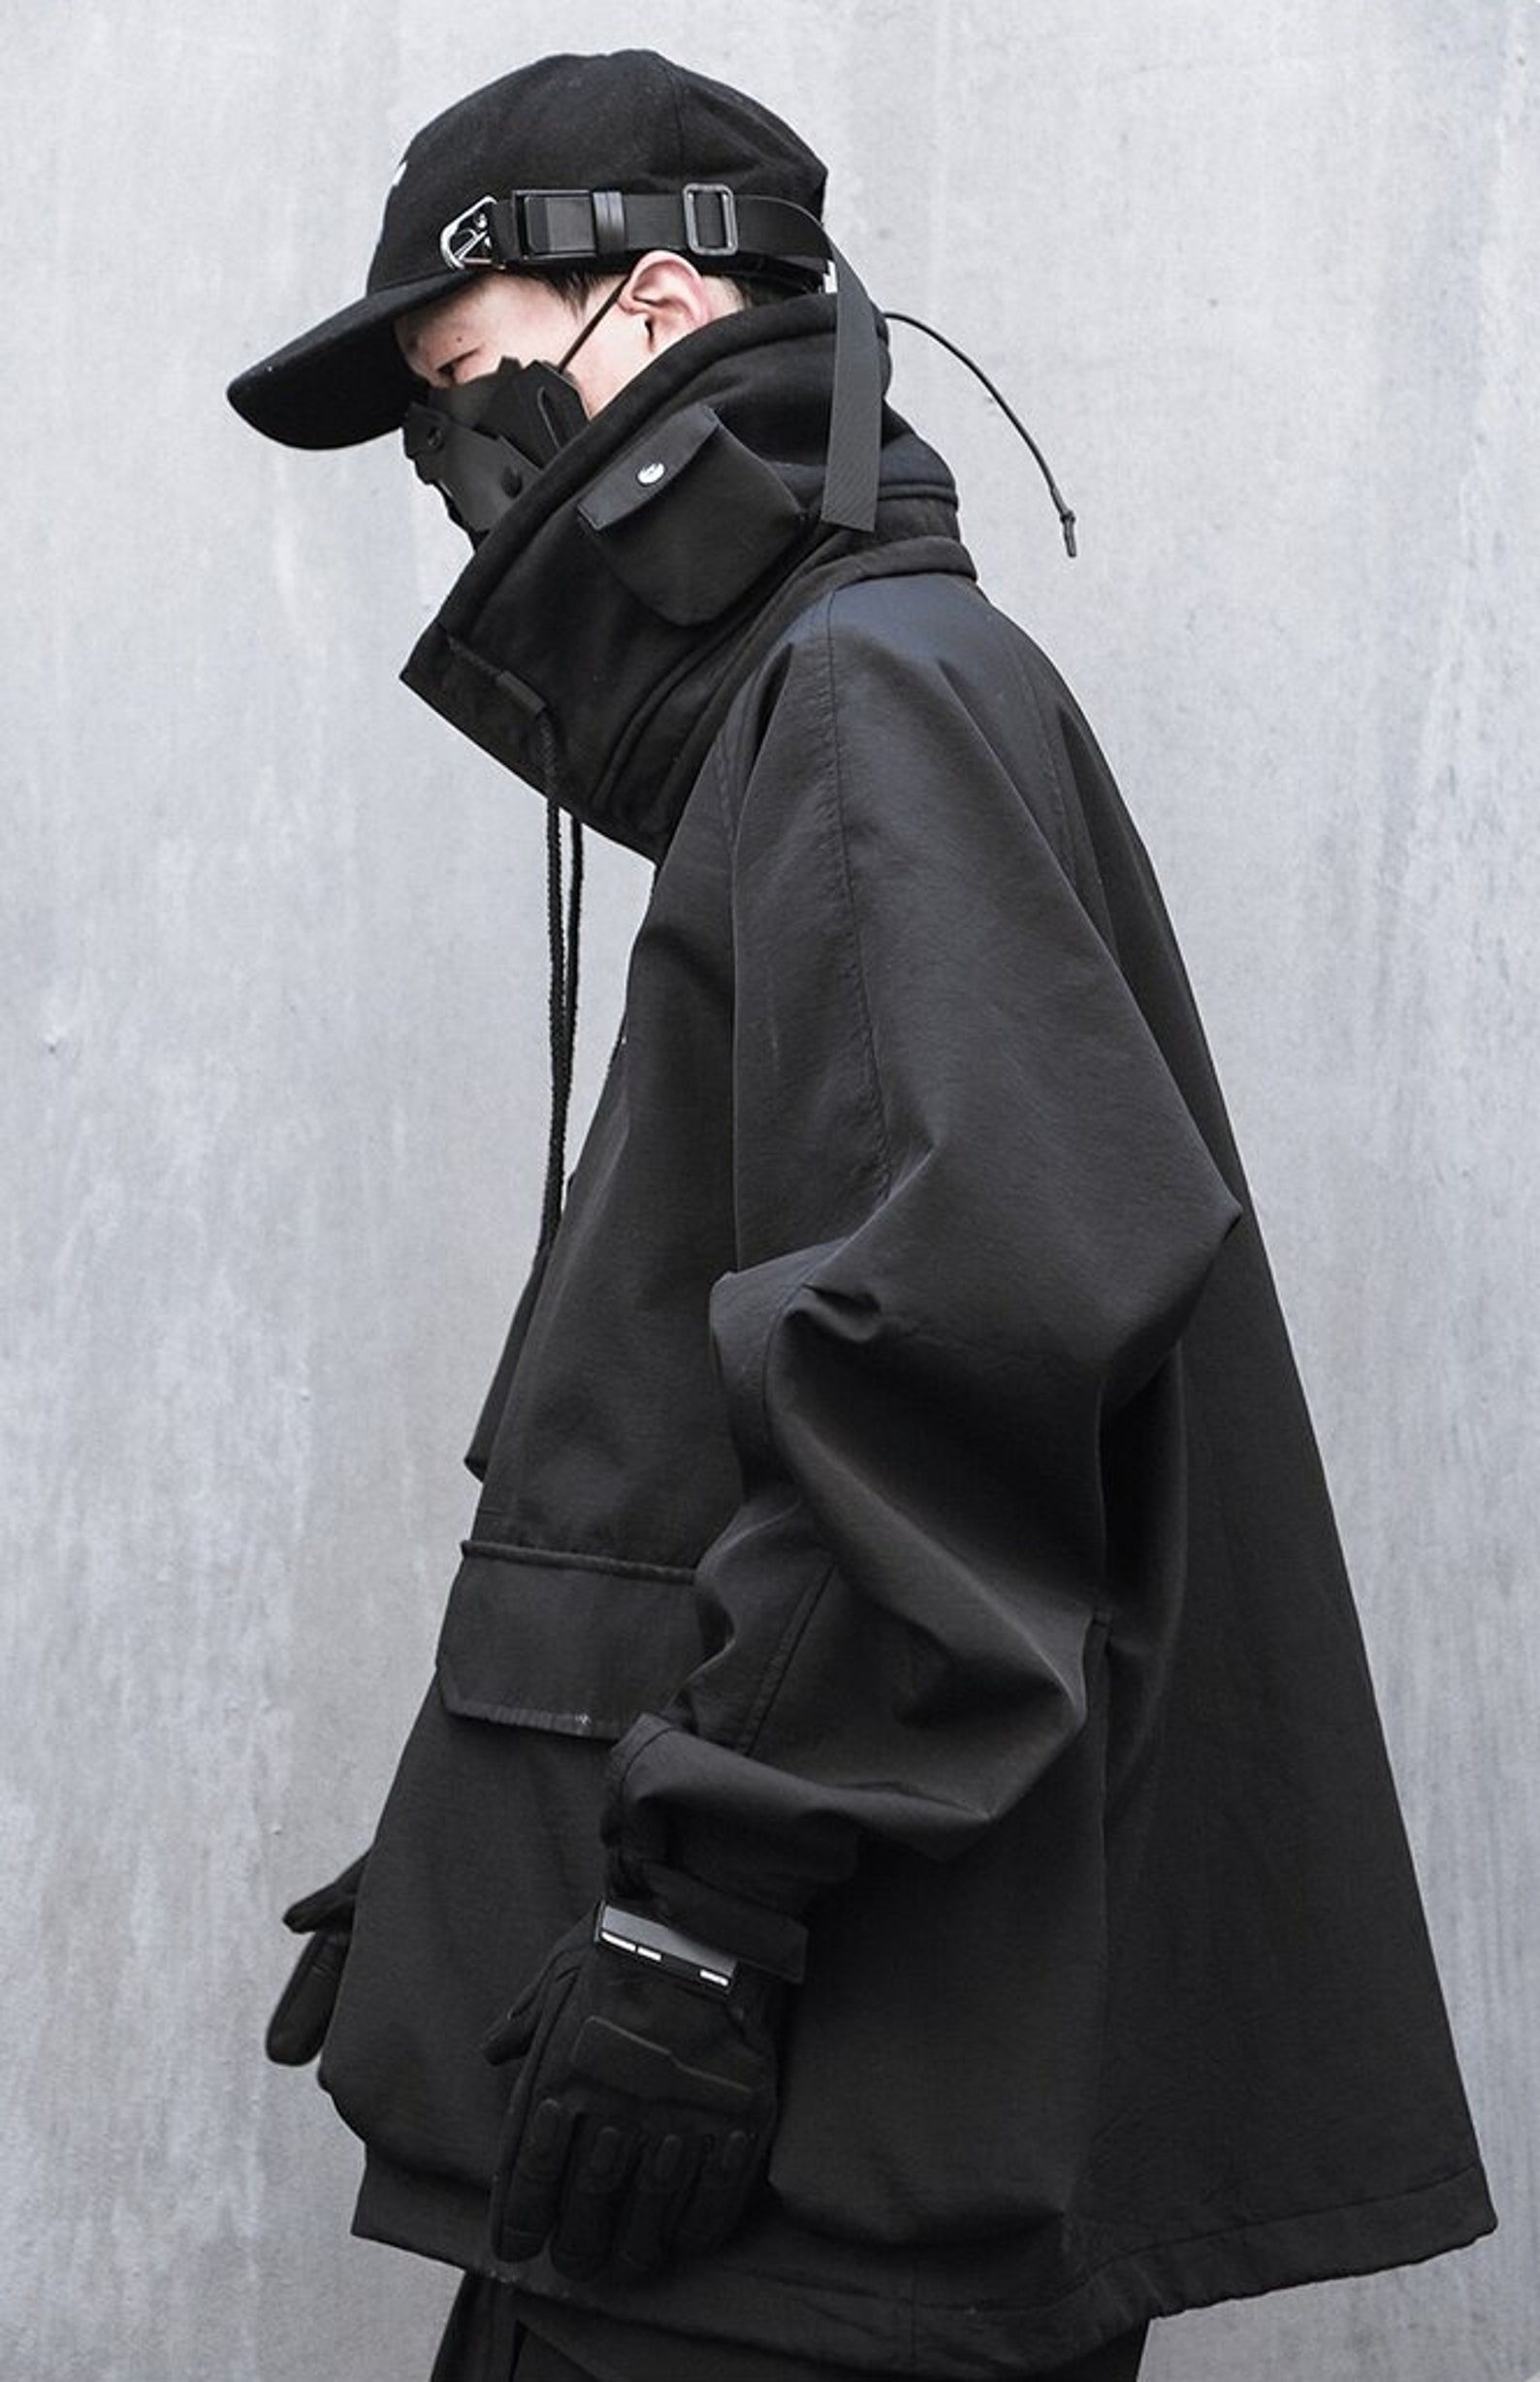 Japanese Streetwear X Crossover Black Jacket for Men Cyberpunk - Etsy